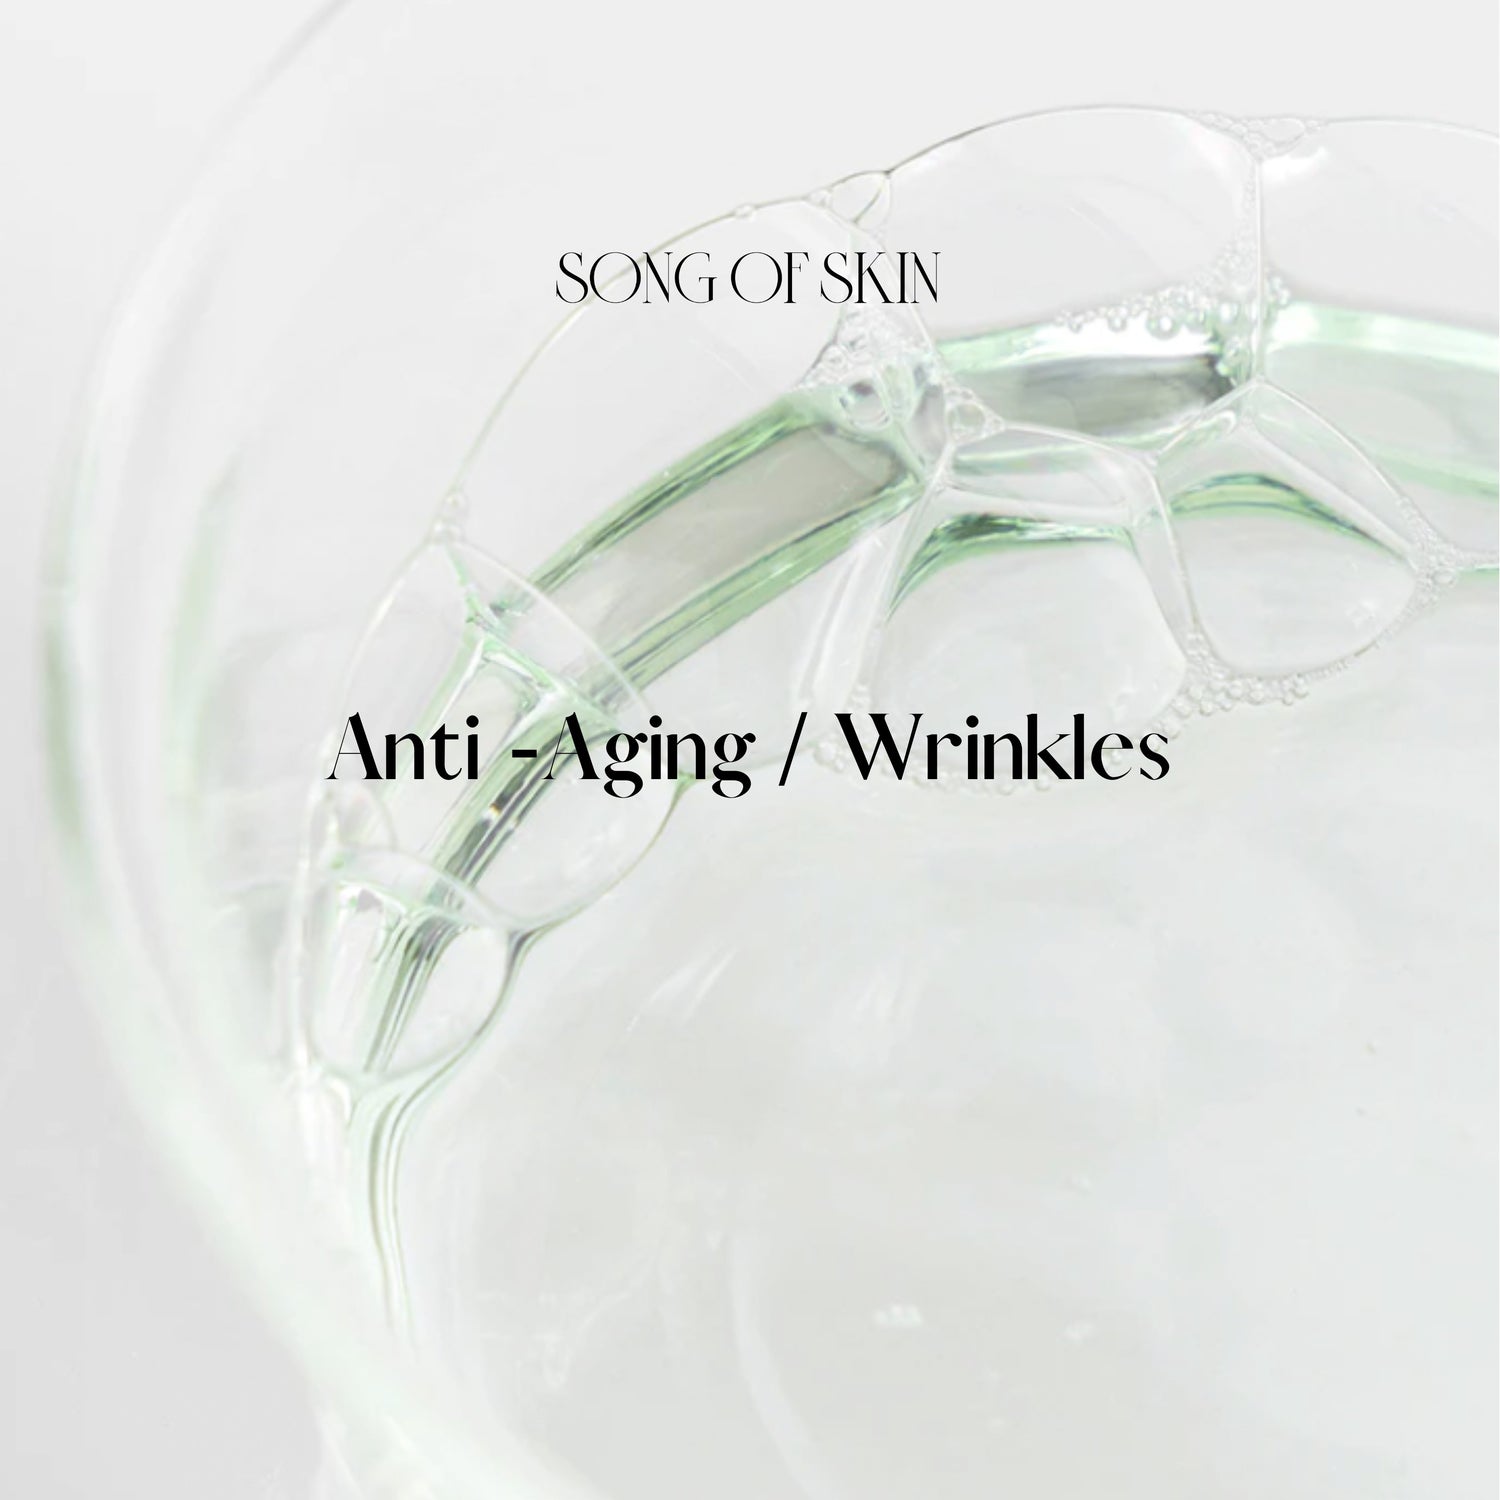 Anti Aging / Wrinkles